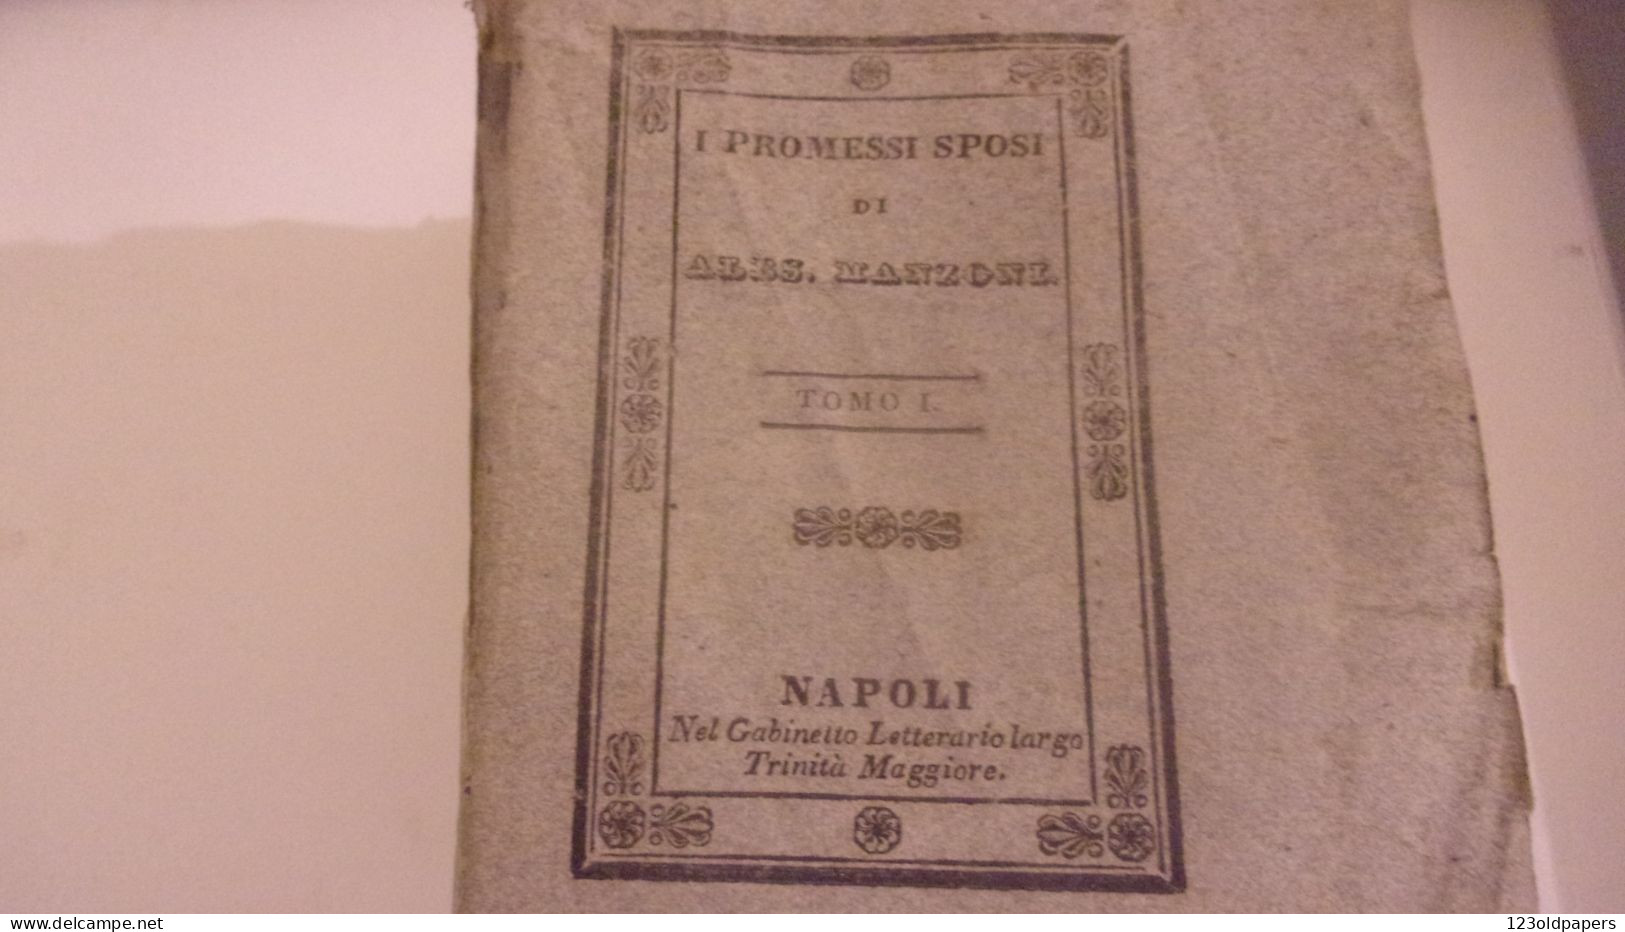 1836 6 VOL COMPLET I PROMESSI SPOSI DI ALES MANZONI  NAPOLI GABINETTO LETTERARIO - Alte Bücher